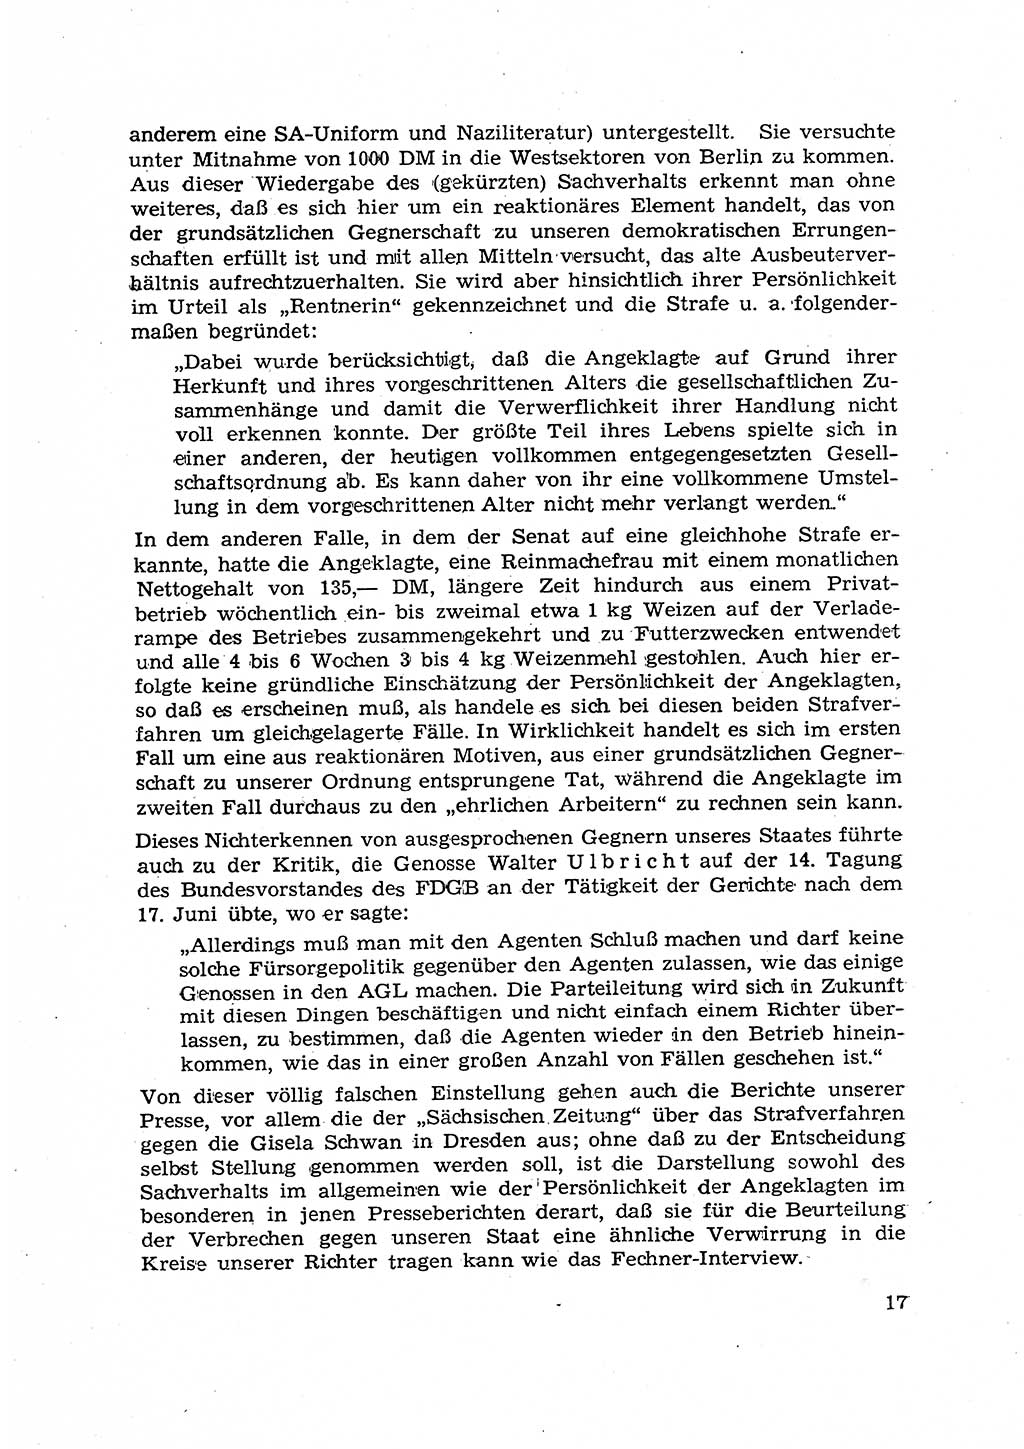 Hauptaufgaben der Justiz [Deutsche Demokratische Republik (DDR)] bei der Durchführung des neuen Kurses 1953, Seite 17 (Hpt.-Aufg. J. DDR 1953, S. 17)